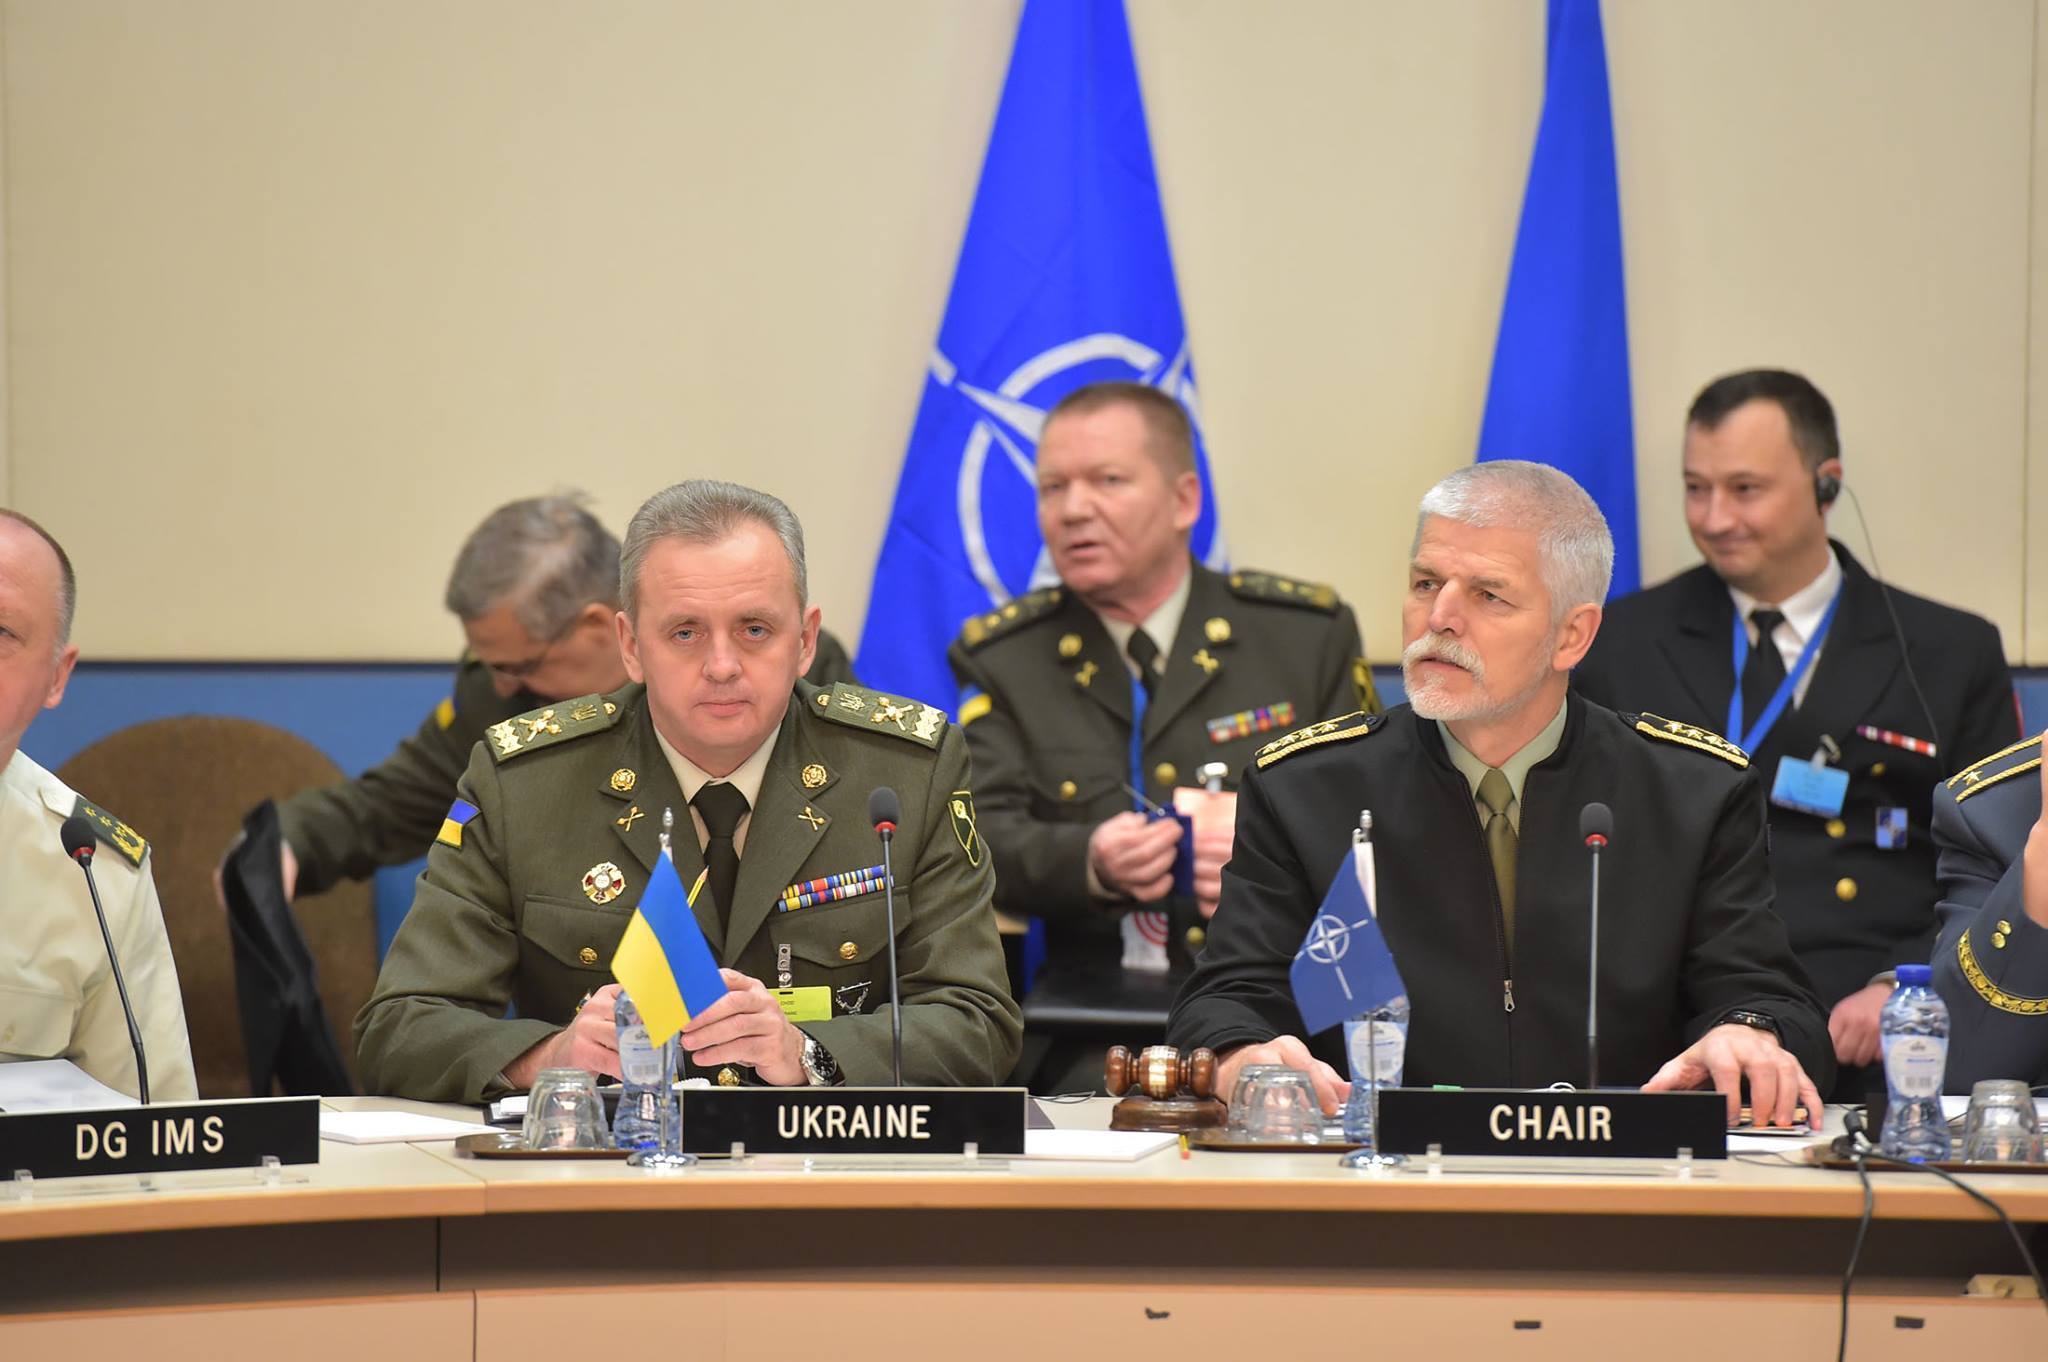 Кусай локти, Путин! НАТО 100-процентно выступает за Украину в российско-украинском конфликте